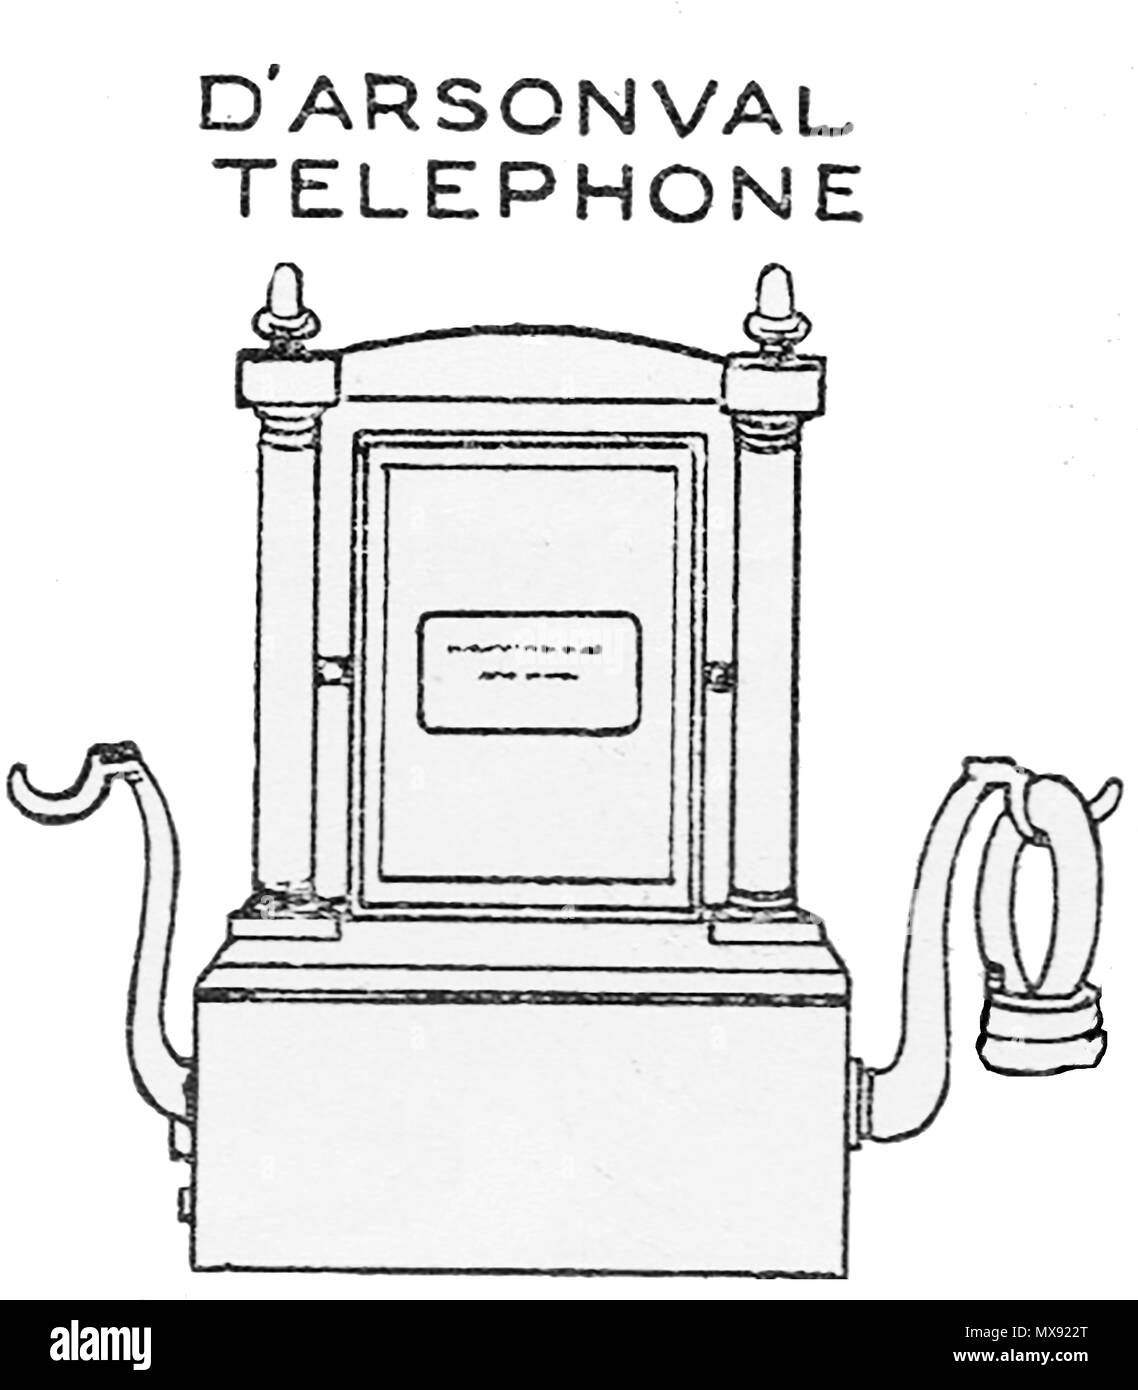 Primi apparecchi telefonici - Un 1930 Illustrazione di un D'Aesonval telefono dispositivo di trasmissione Foto Stock